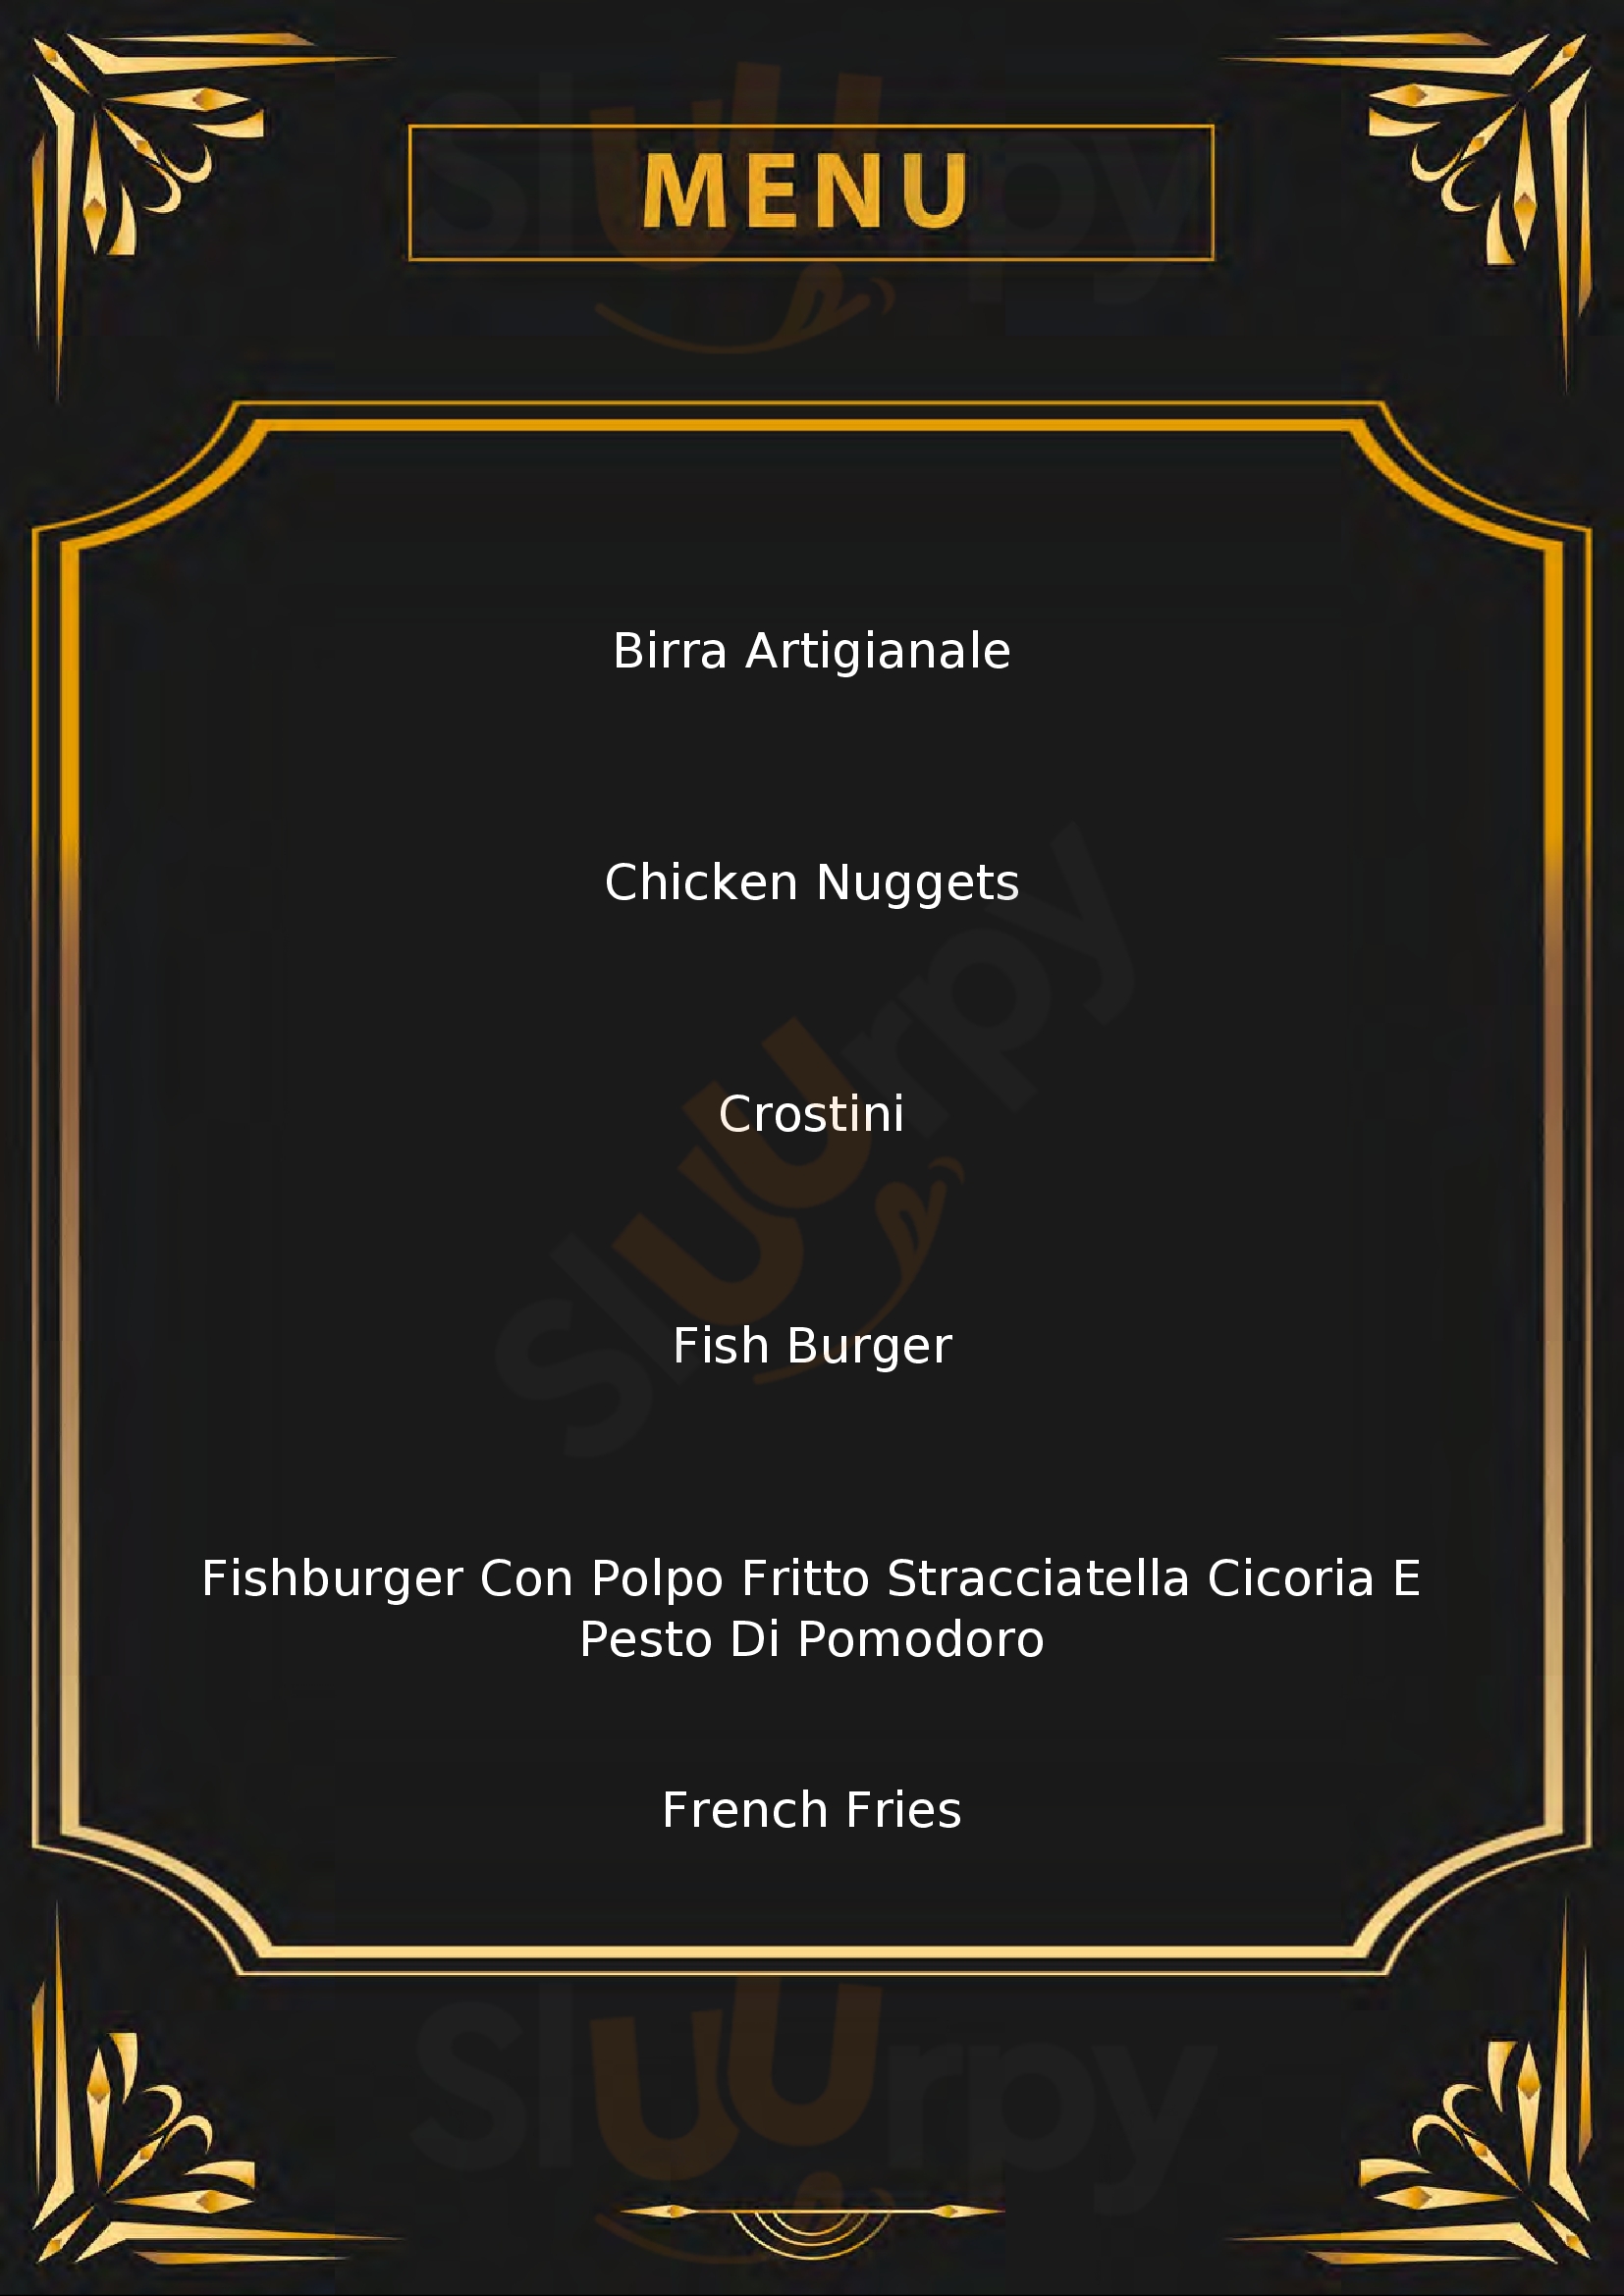 Fish Ham Burger & Fry Senigallia menù 1 pagina